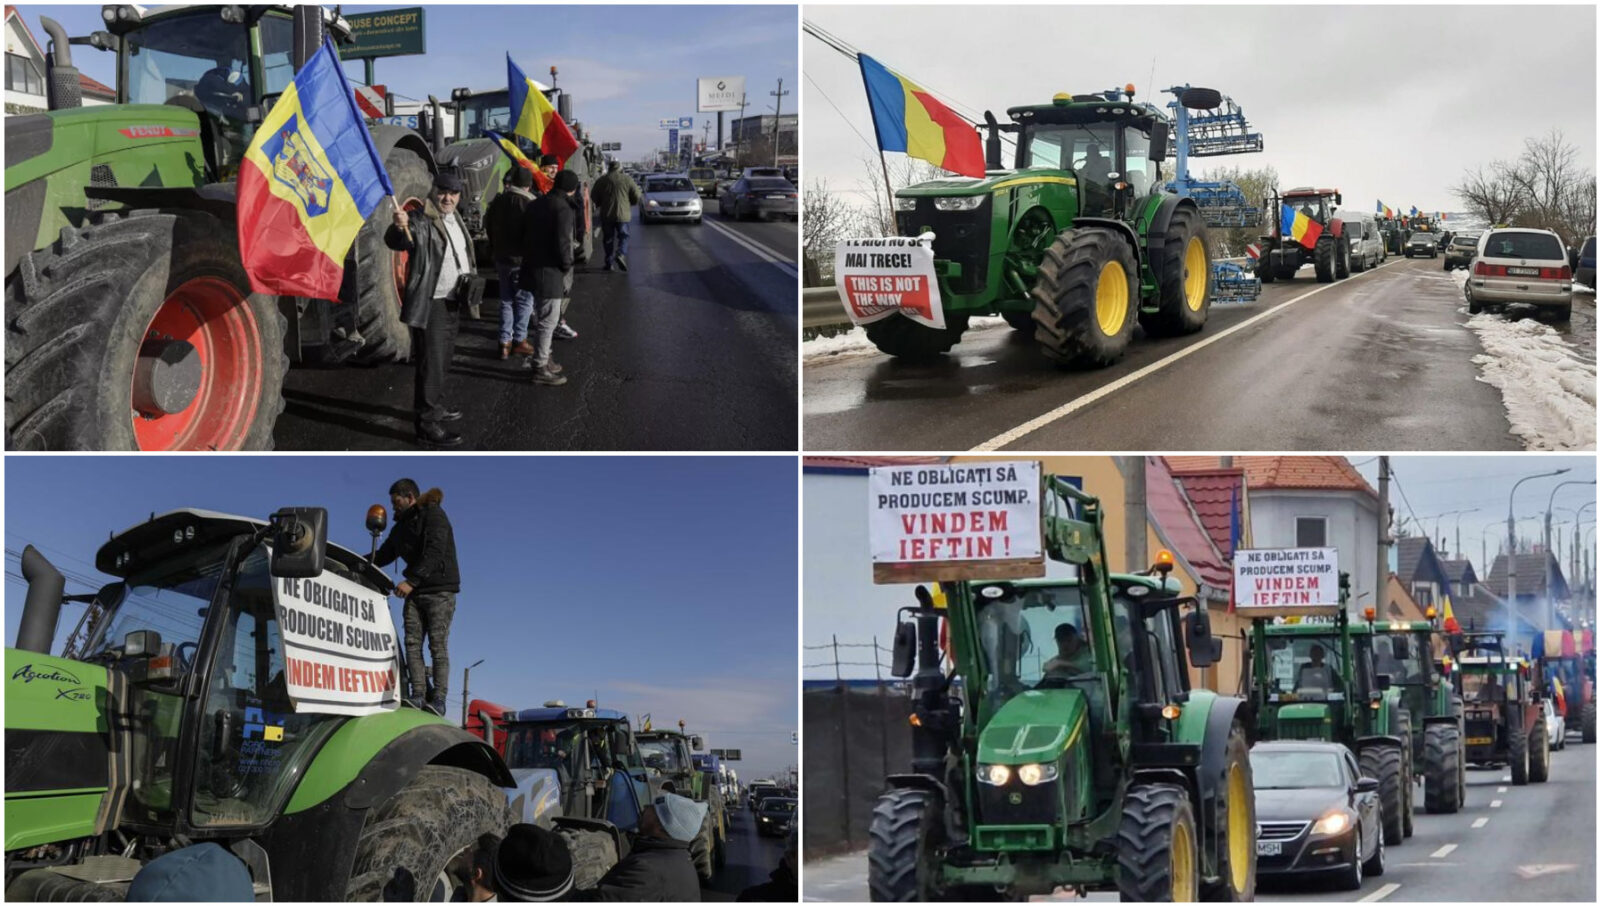 stirimax.ro fermierii romani tradati si ignorati protestele continua